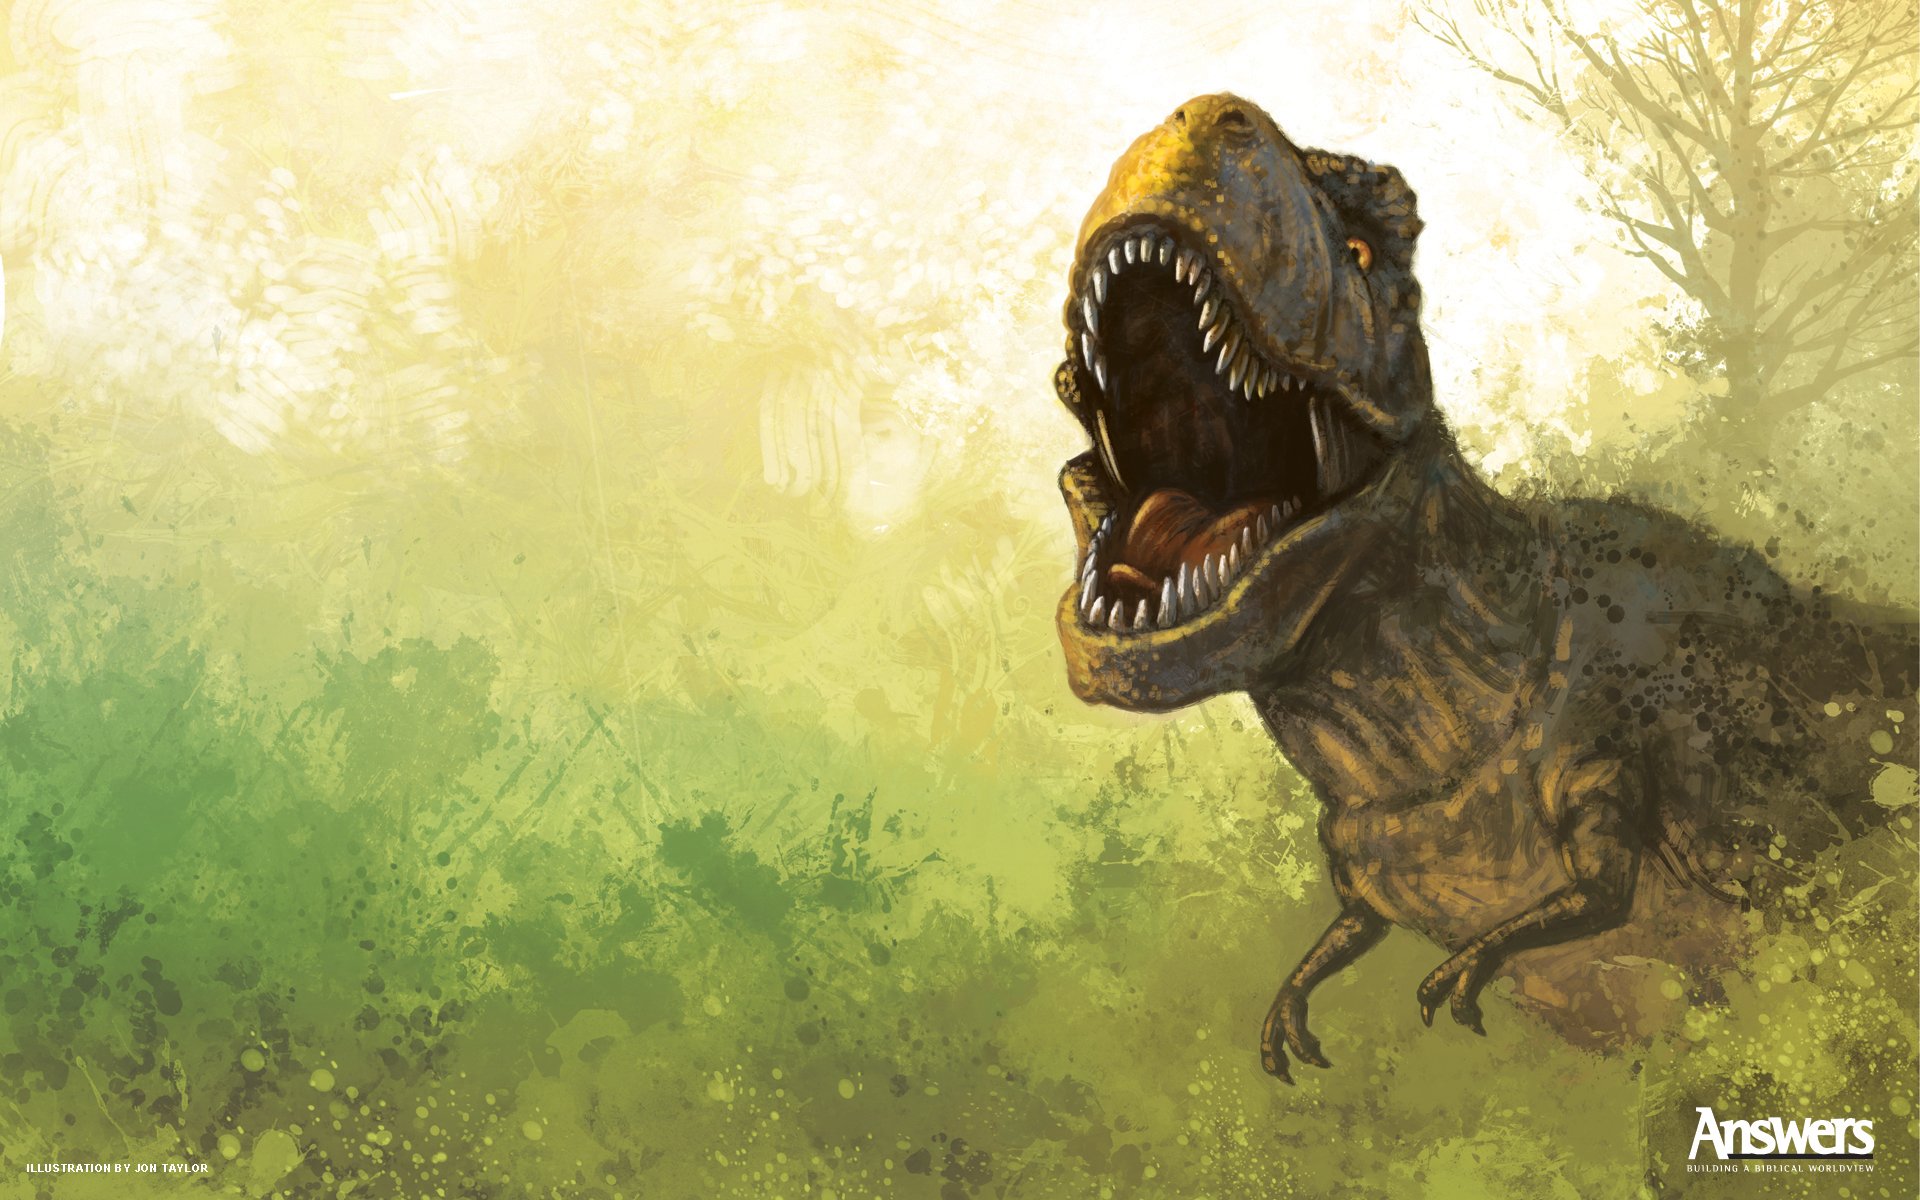 dini wallpaper,dinosaurier,tyrannosaurus,velociraptor,illustration,digitales compositing